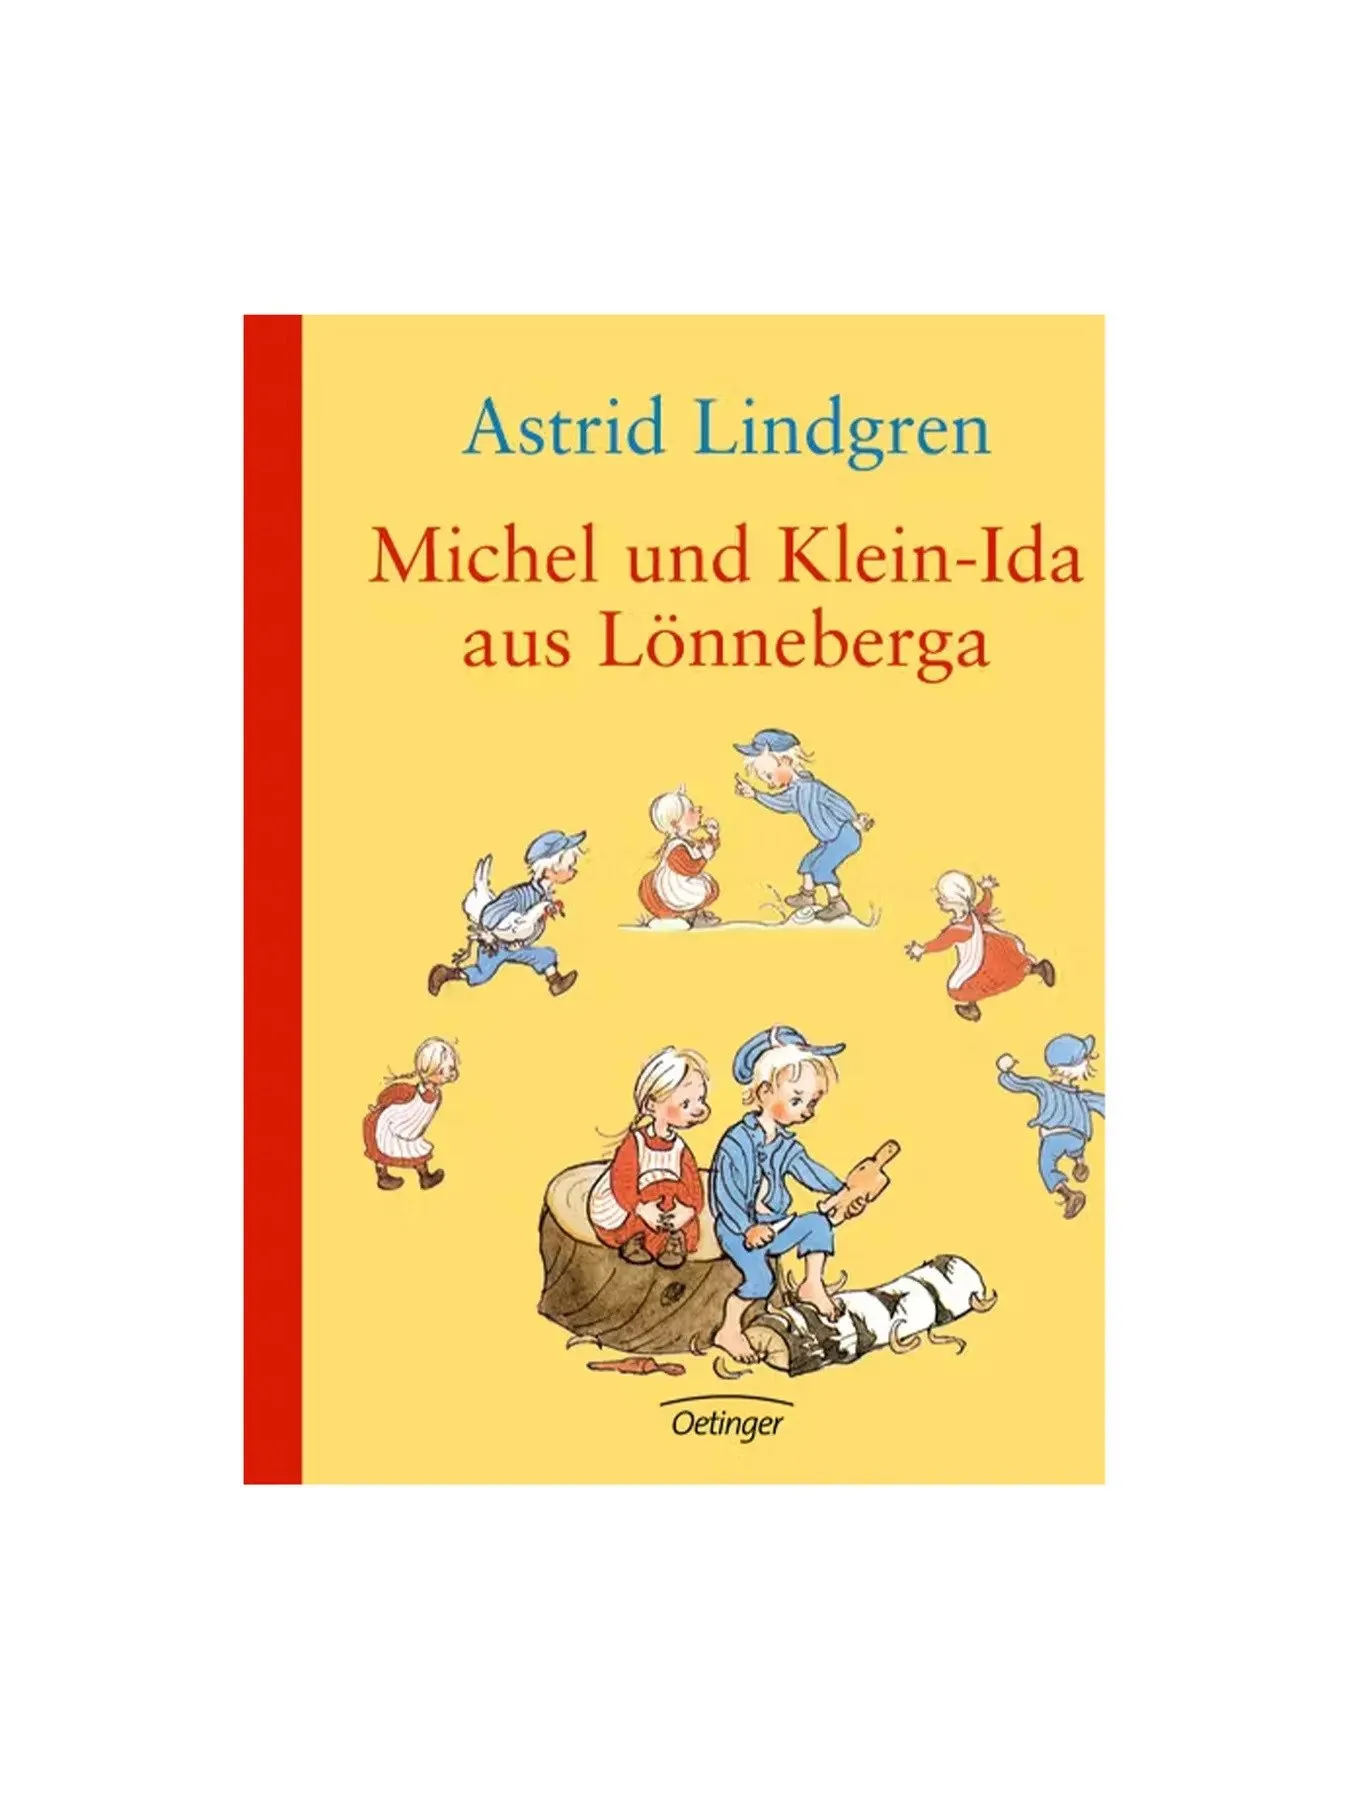 Michel und Klein-Ida aus Lönneberga.